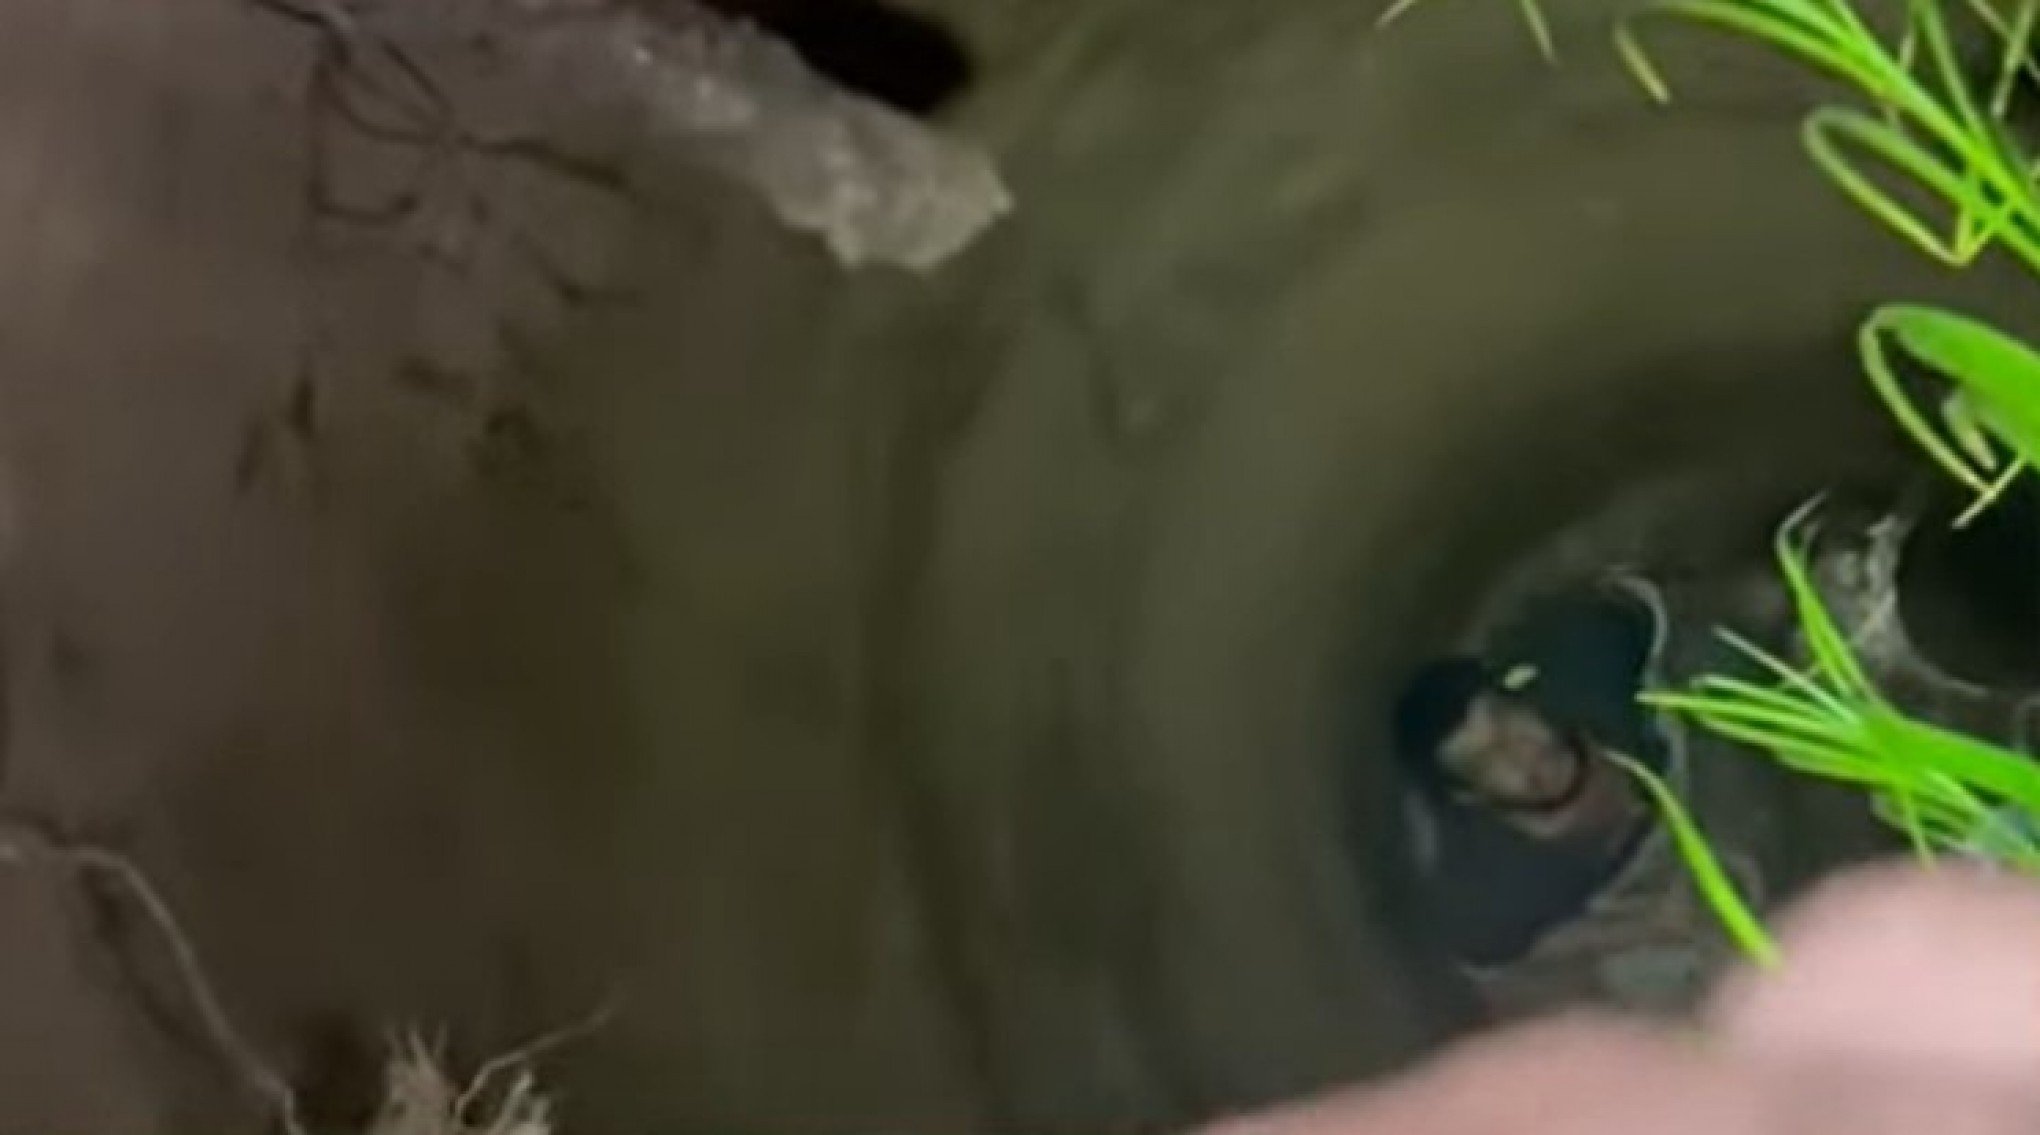 Jovem autista é resgatado em poço com 16 metros de profundida após 4 dias desaparecido em SP